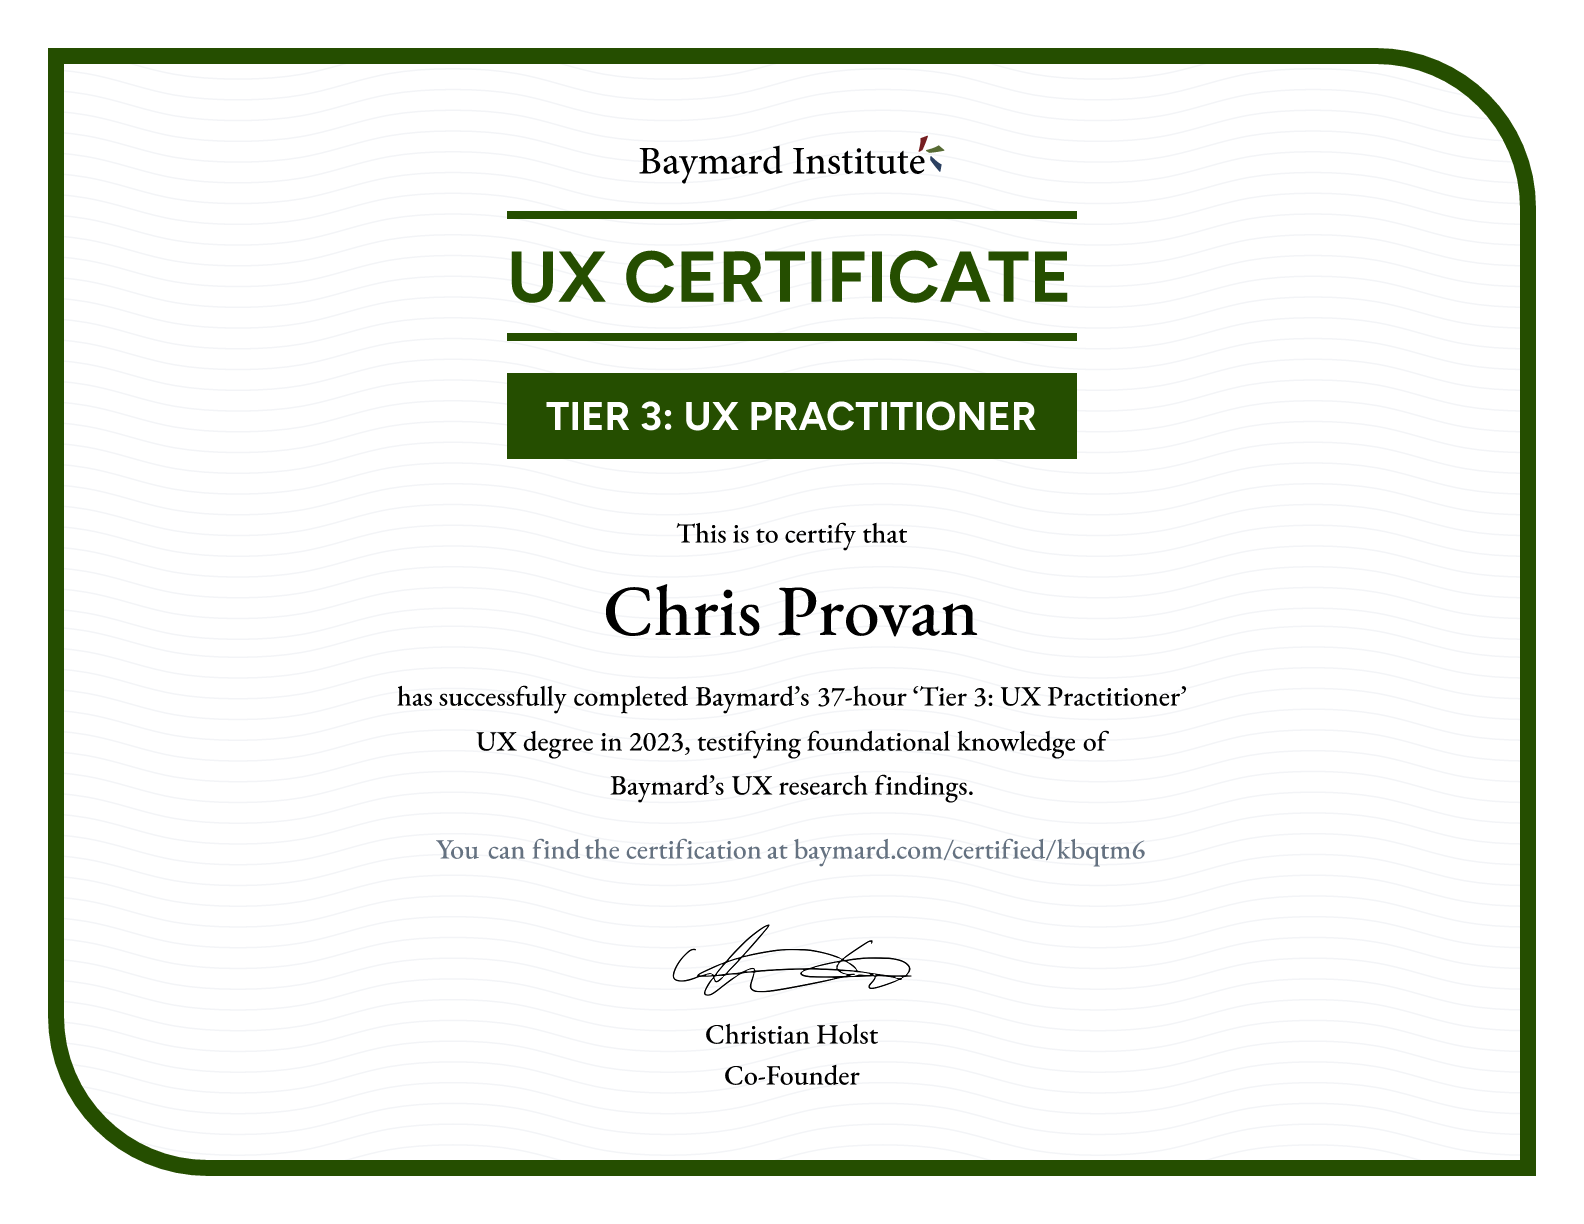 Chris Provan’s certificate